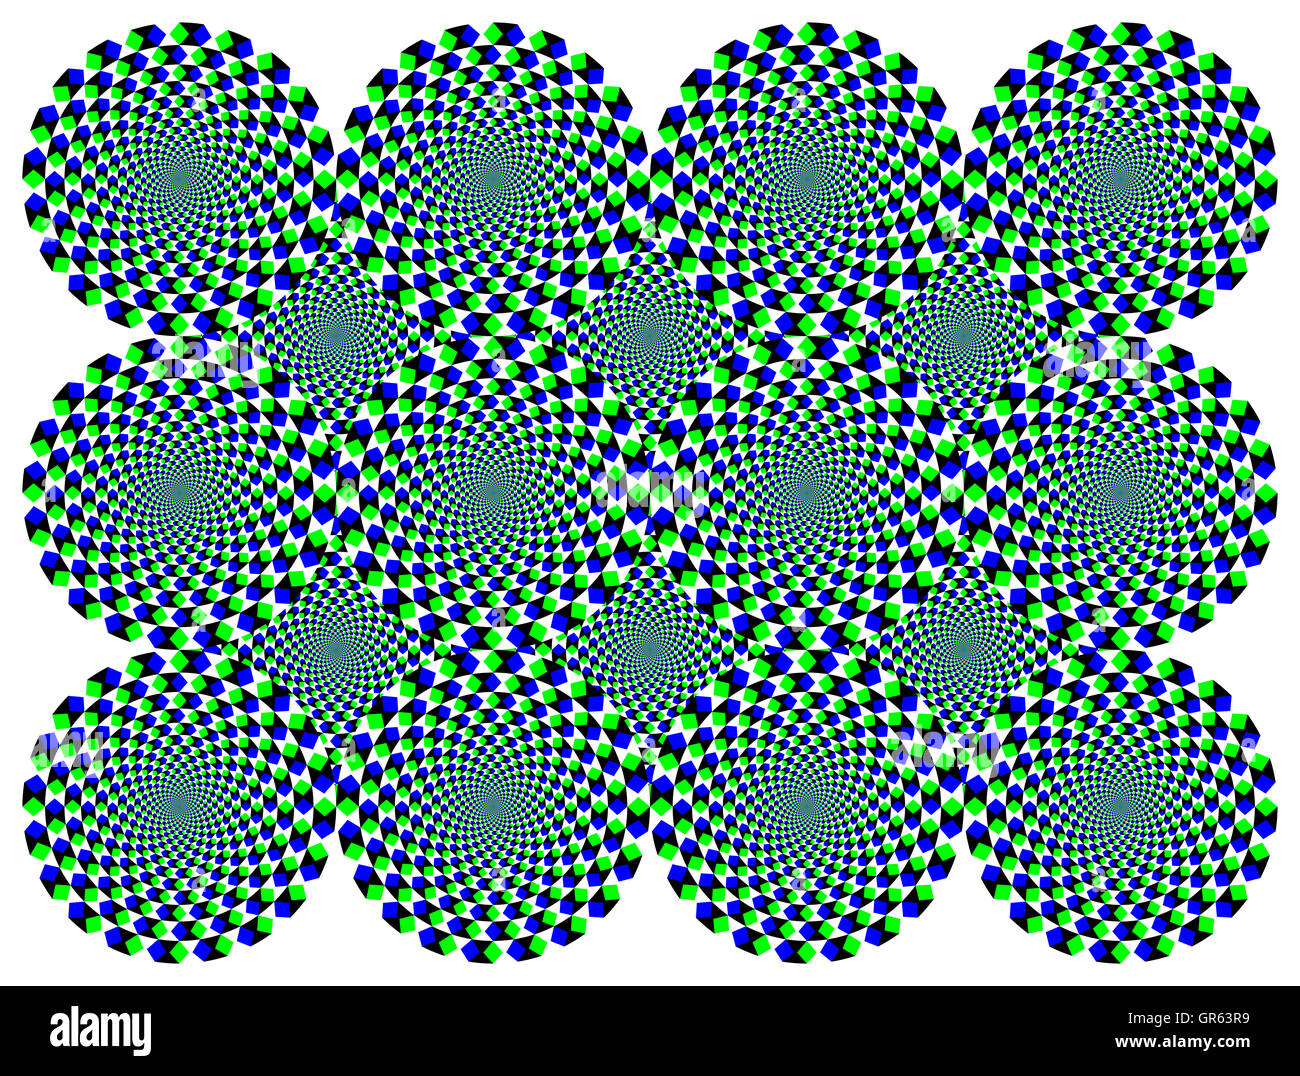 Rotierenden Diamant Räder Bewegung Illusion. Die Räder mit blauen und grünen Diamanten scheinen im Uhrzeigersinn bewegen, wenn die Augen zu bewegen. Stockfoto